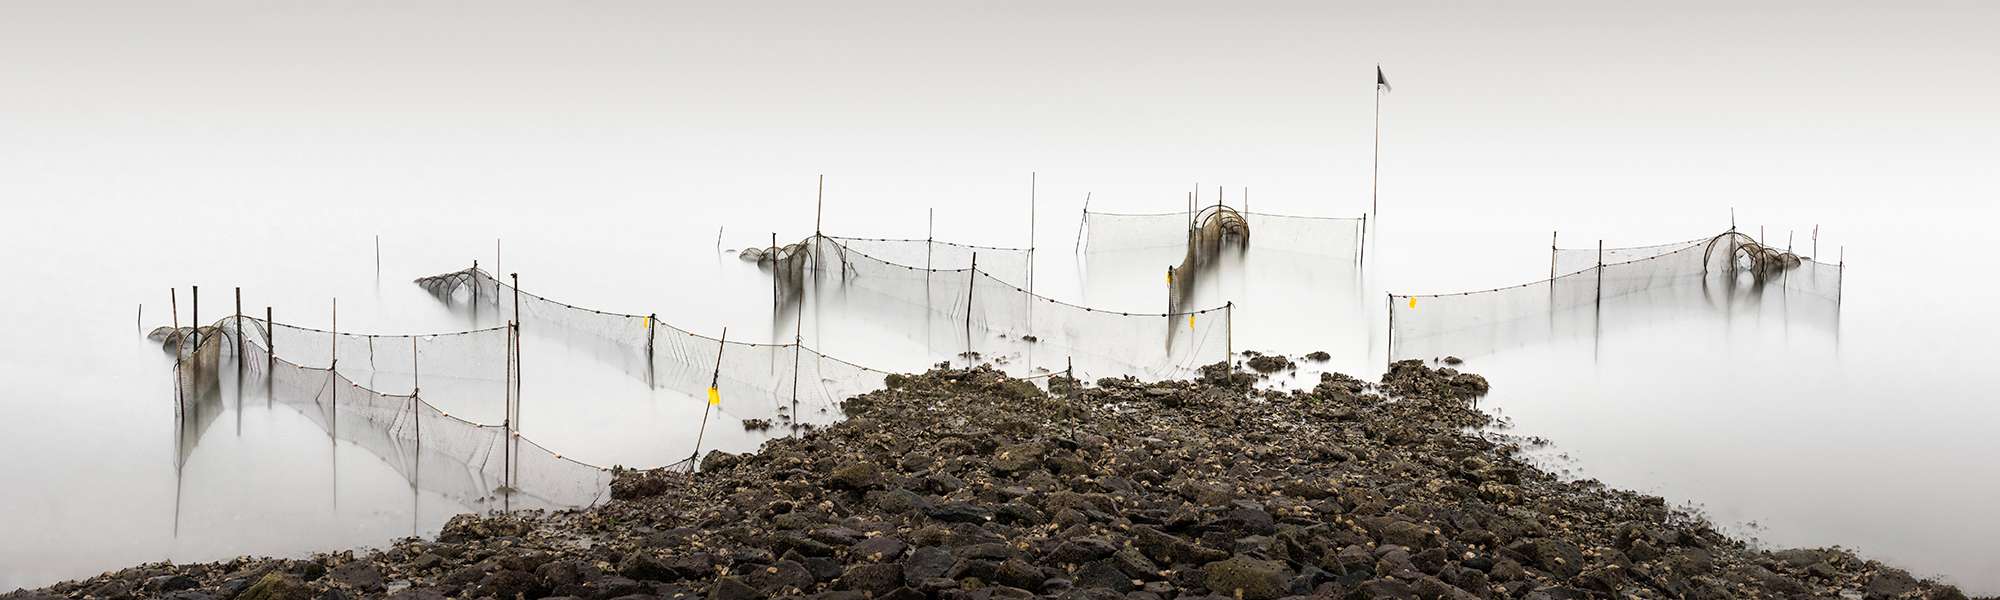 Netze im Wasser vor der Insel Sylt